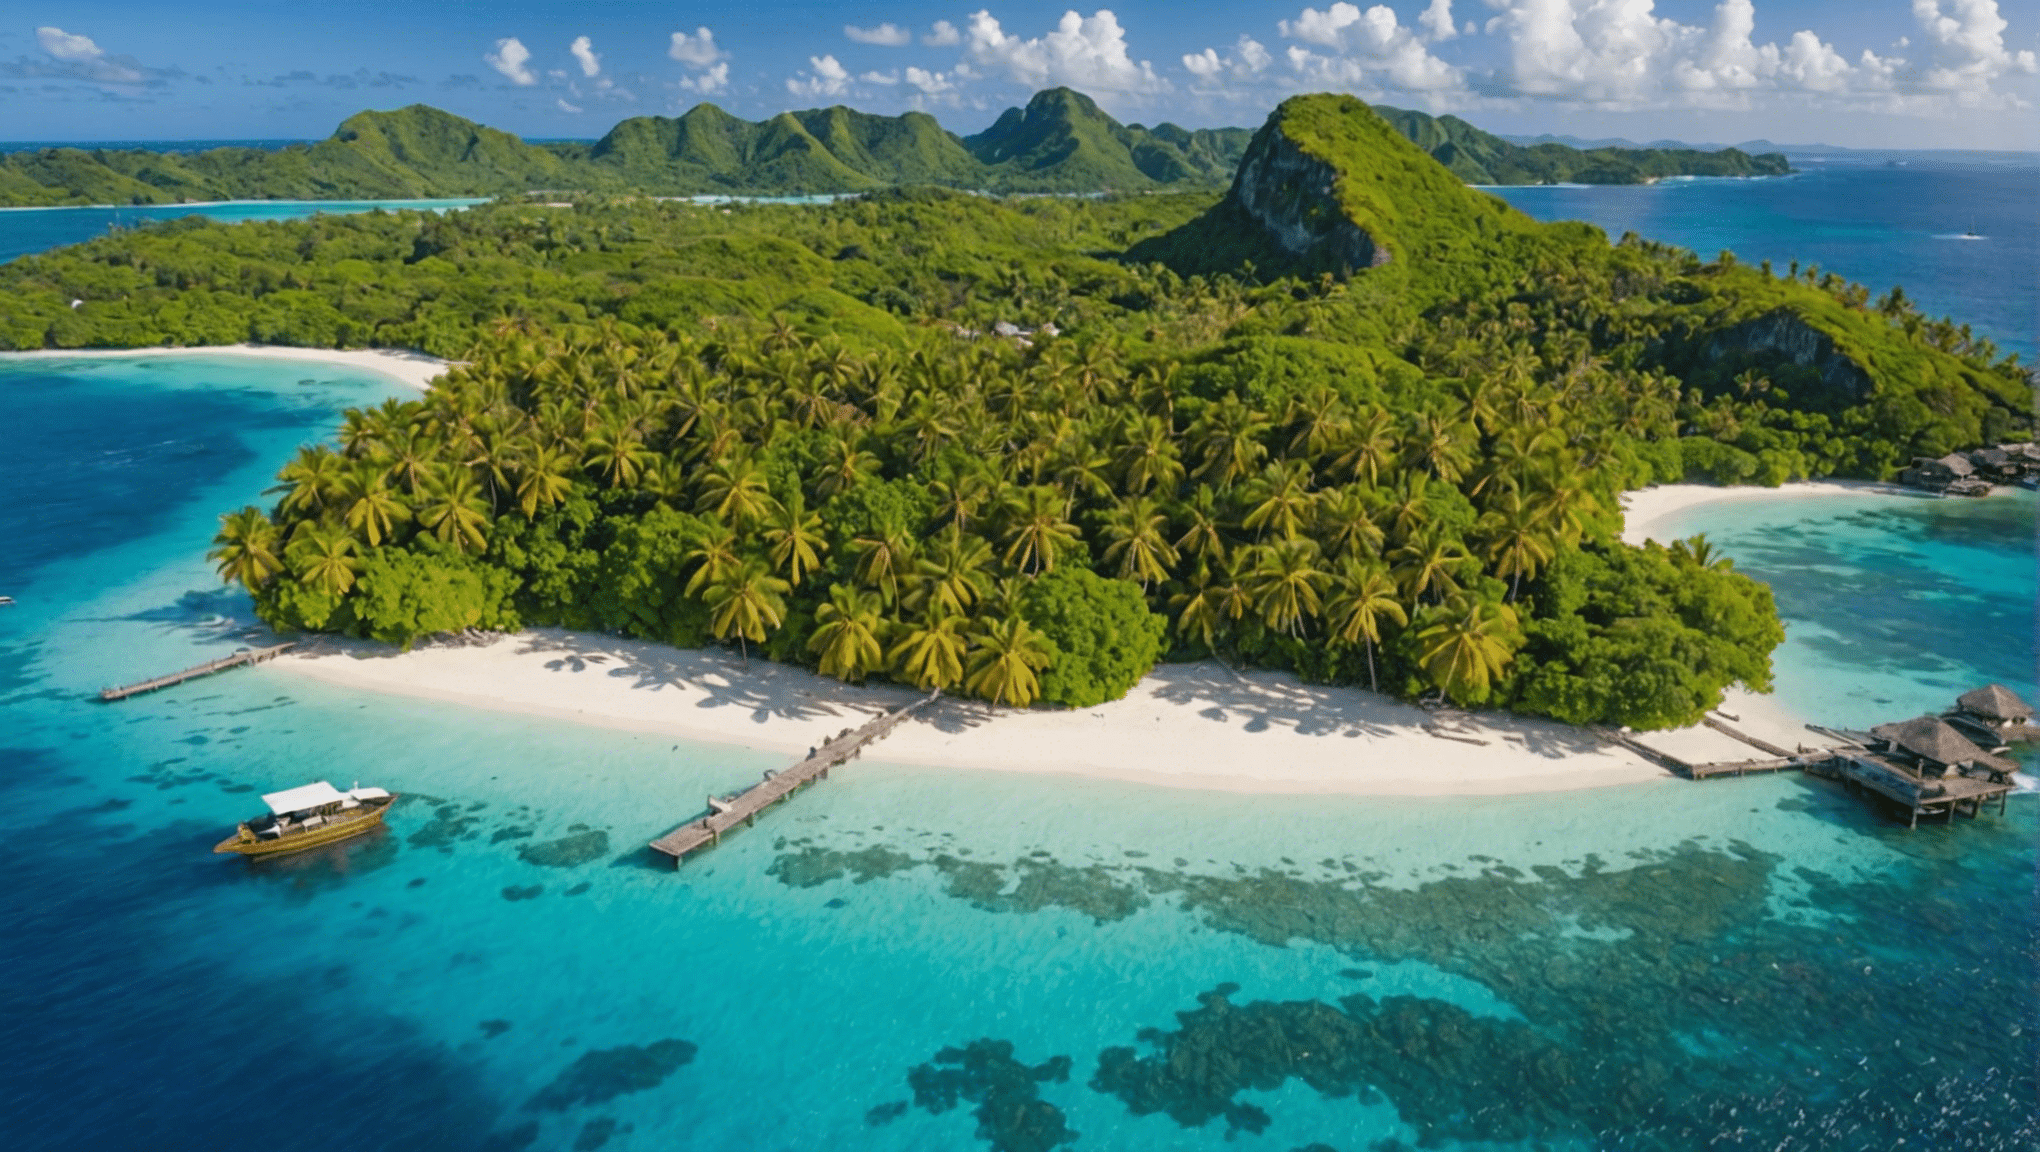 descubre el top 10 de islas paradisíacas para visitar al menos una vez en la vida y déjate llevar por la belleza de estos destinos de ensueño.